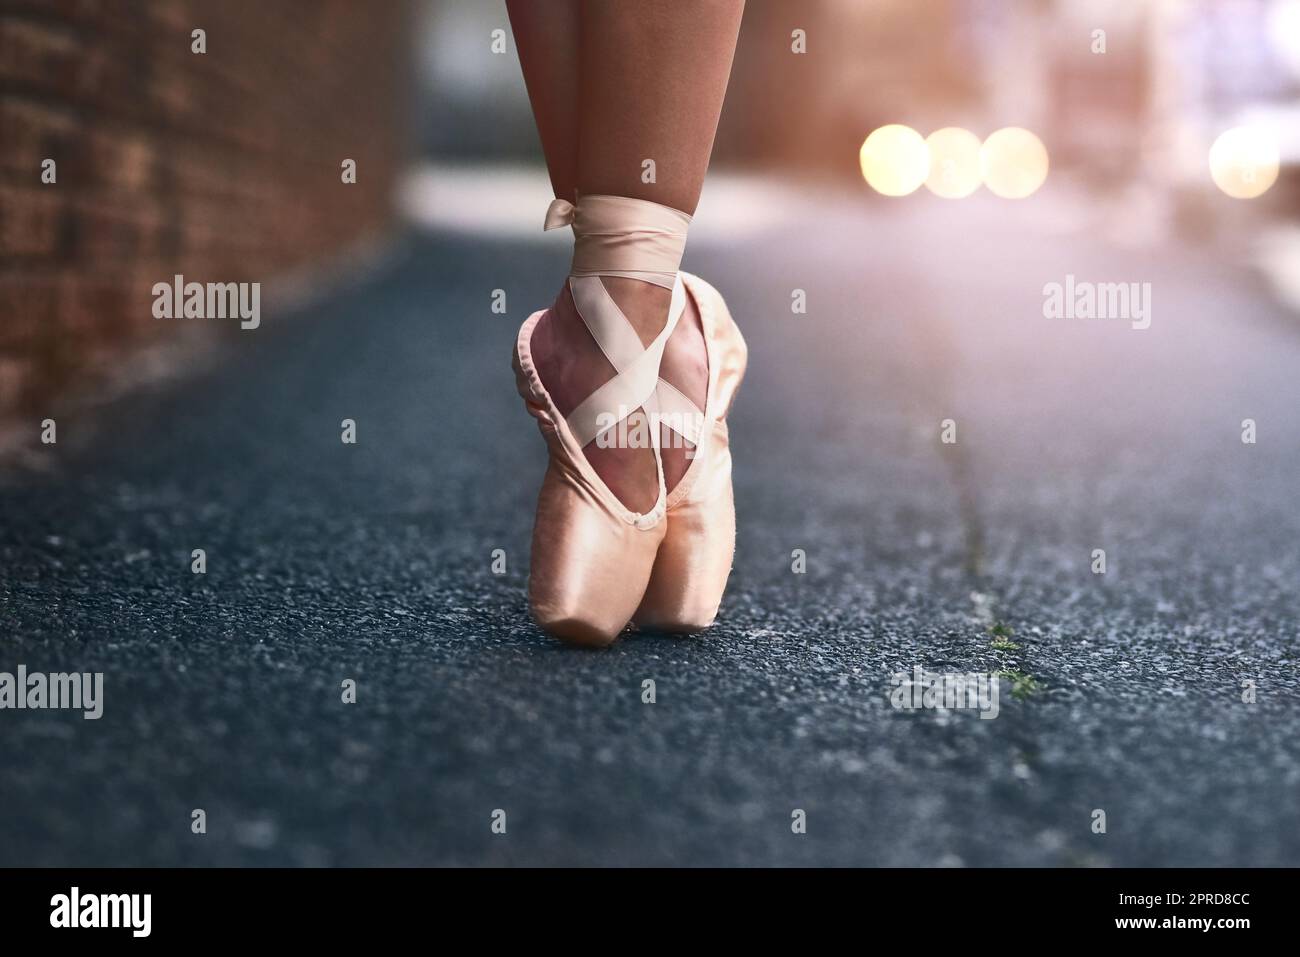 Le cœur d'une danseuse se trouve à ses pieds. Une danseuse de ballet debout sur des orteils contre un fond urbain. Banque D'Images